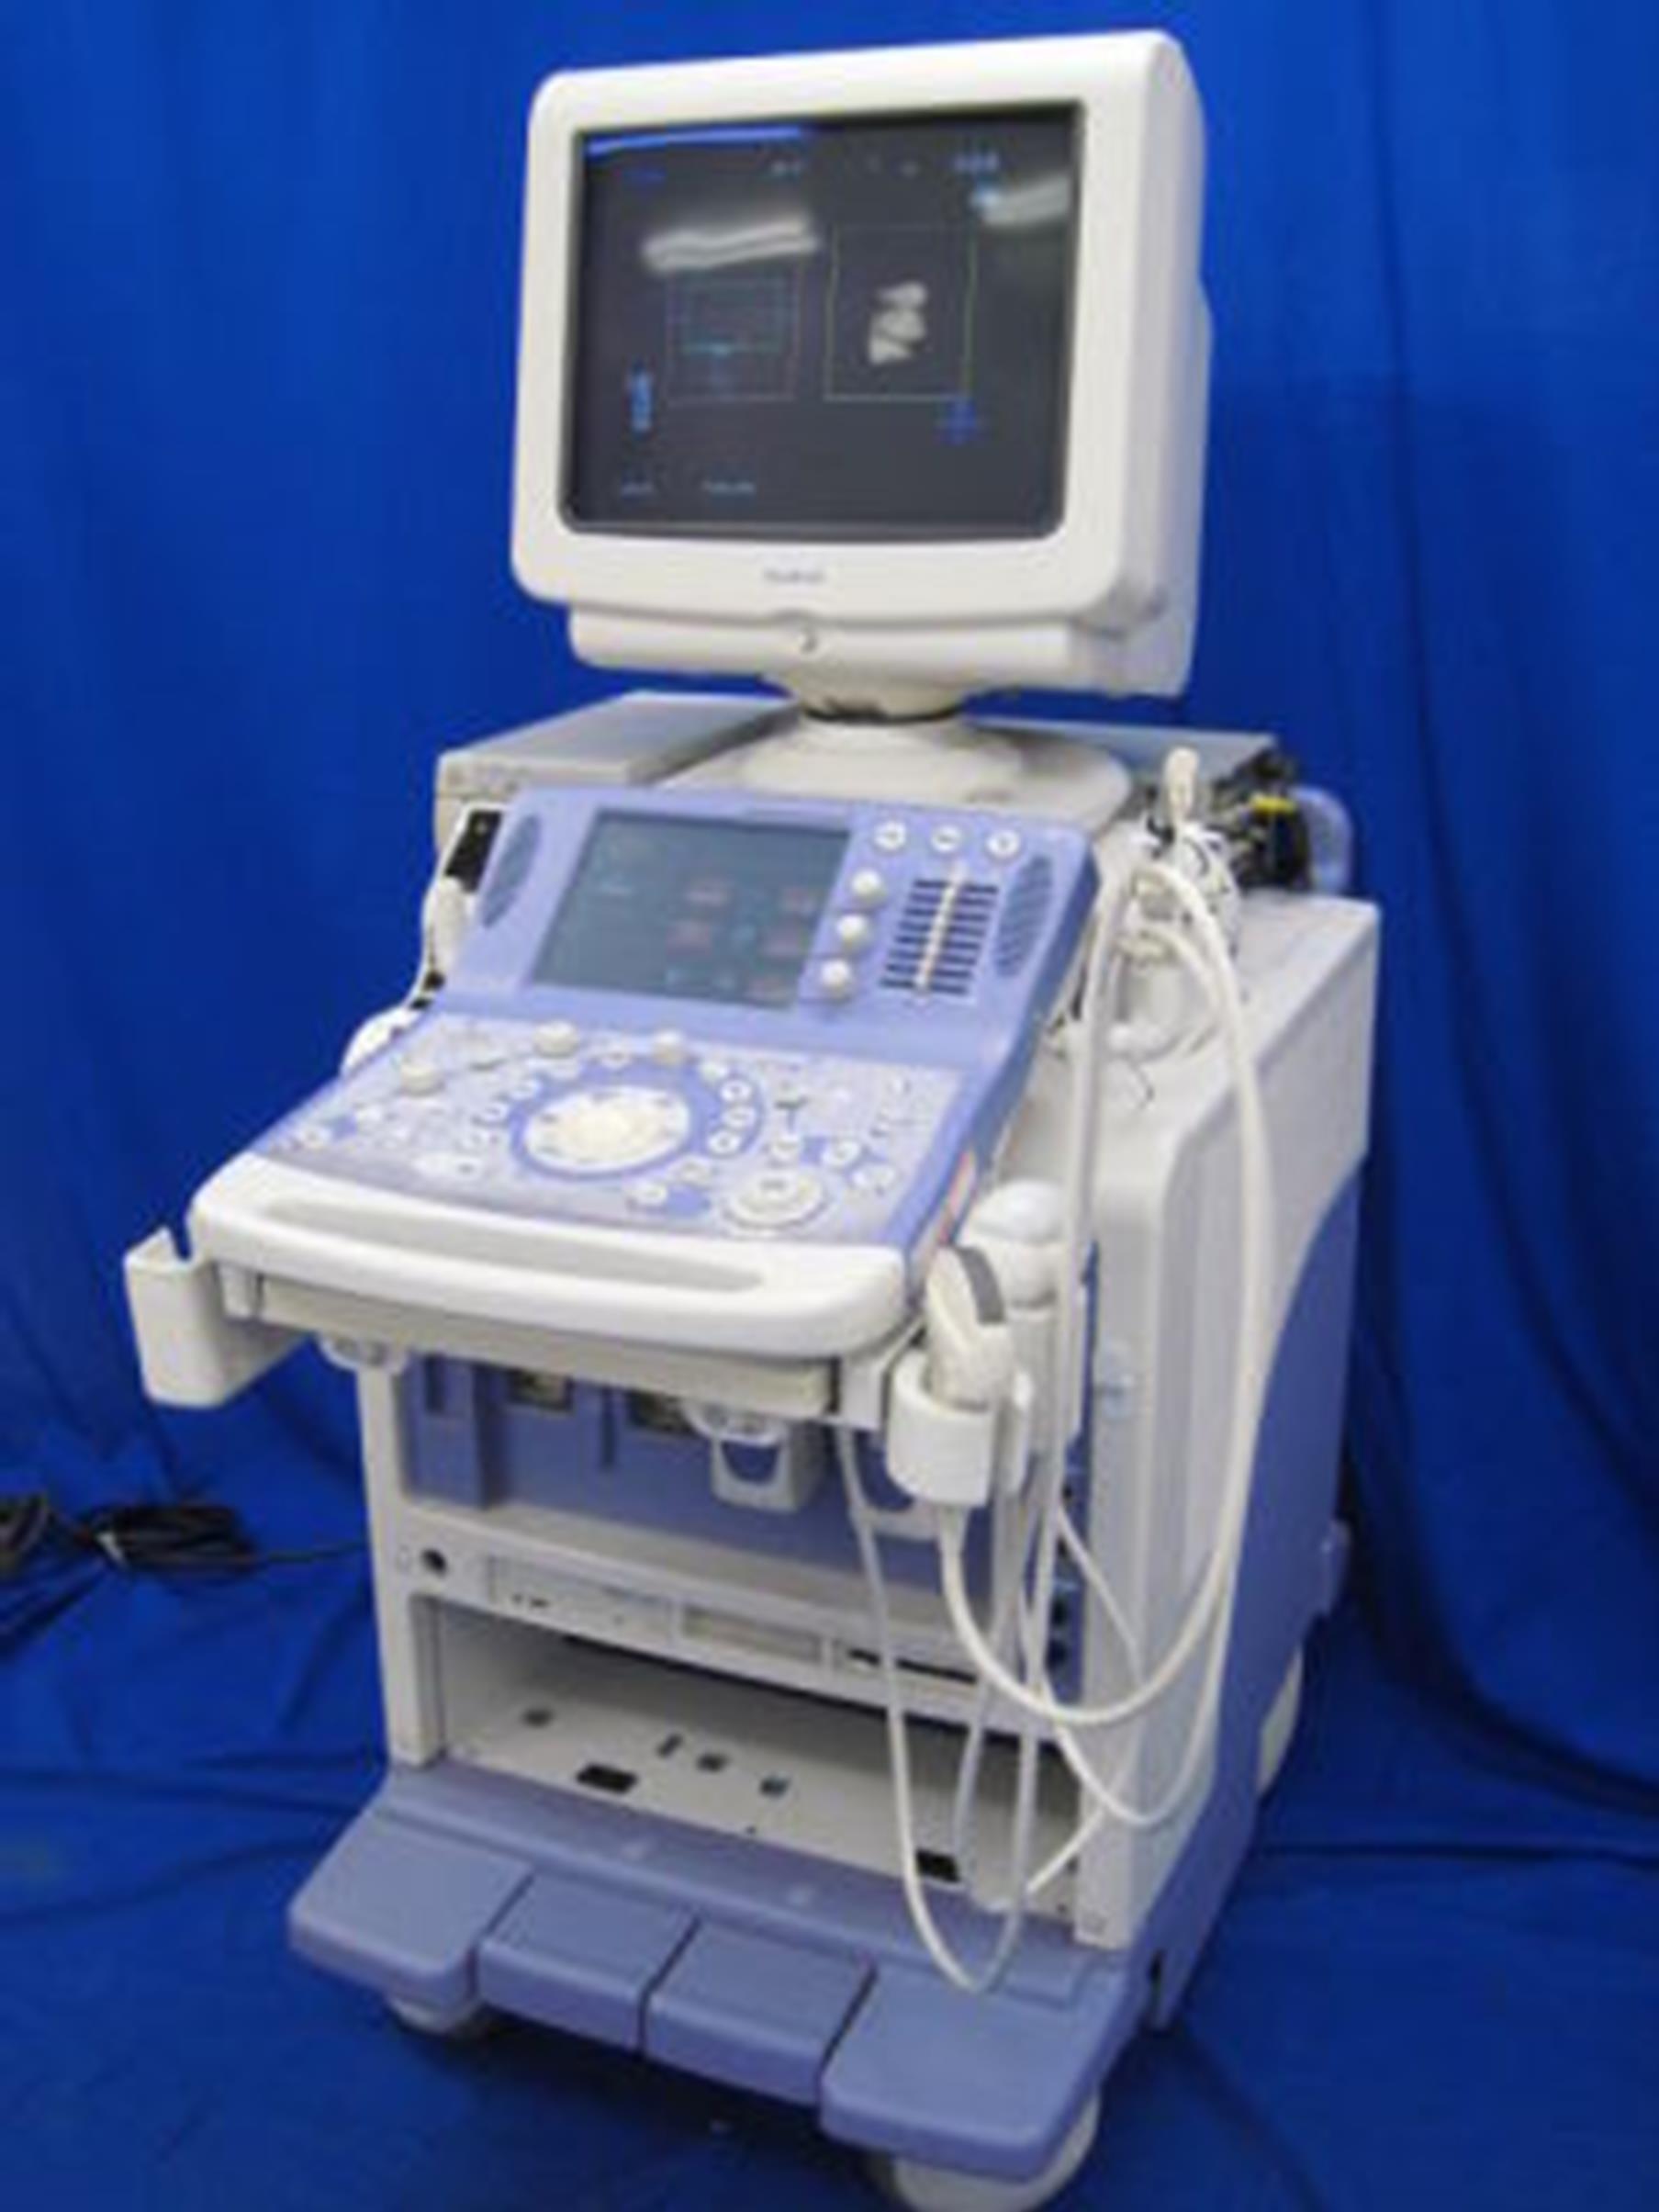 Pri sumu na karotidno bolezen opravimo ultrazvočno Dopplersko preiskavo